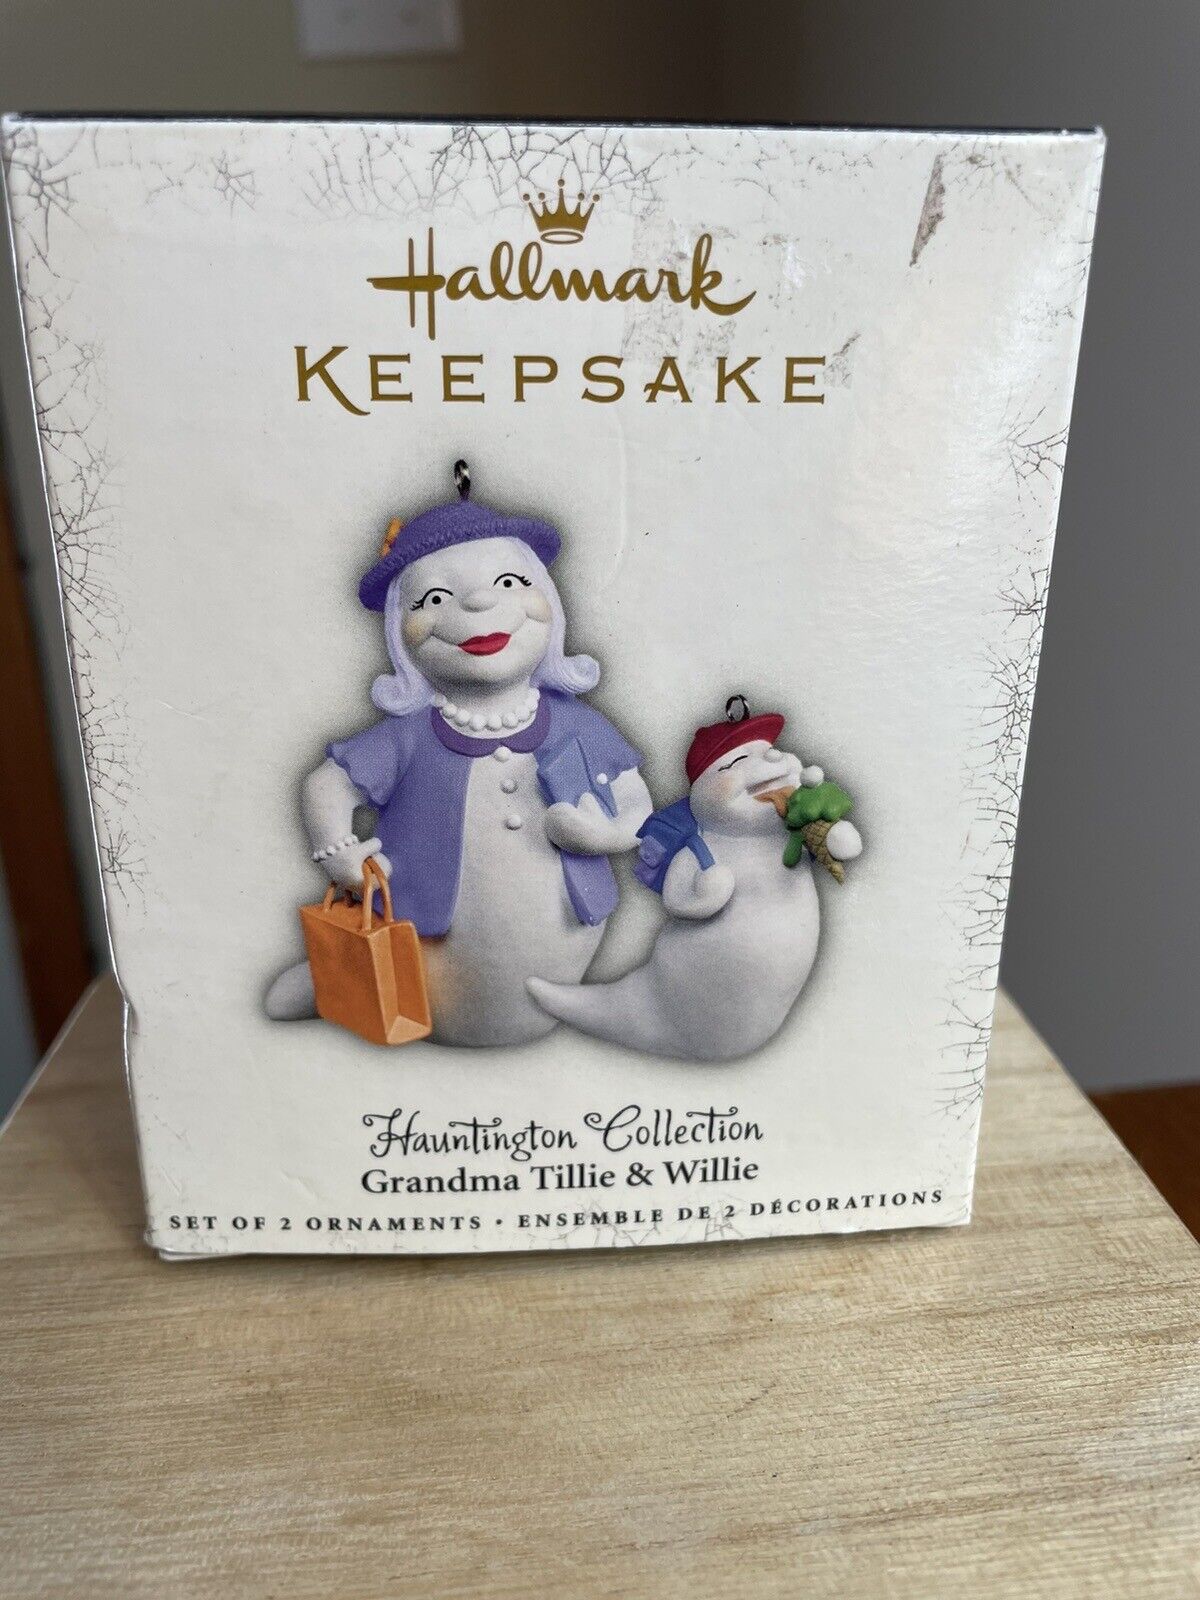 Hallmark Keepsake - GRANDMA TILLIE & WILLIE Halloween Ornament set - Hauntington